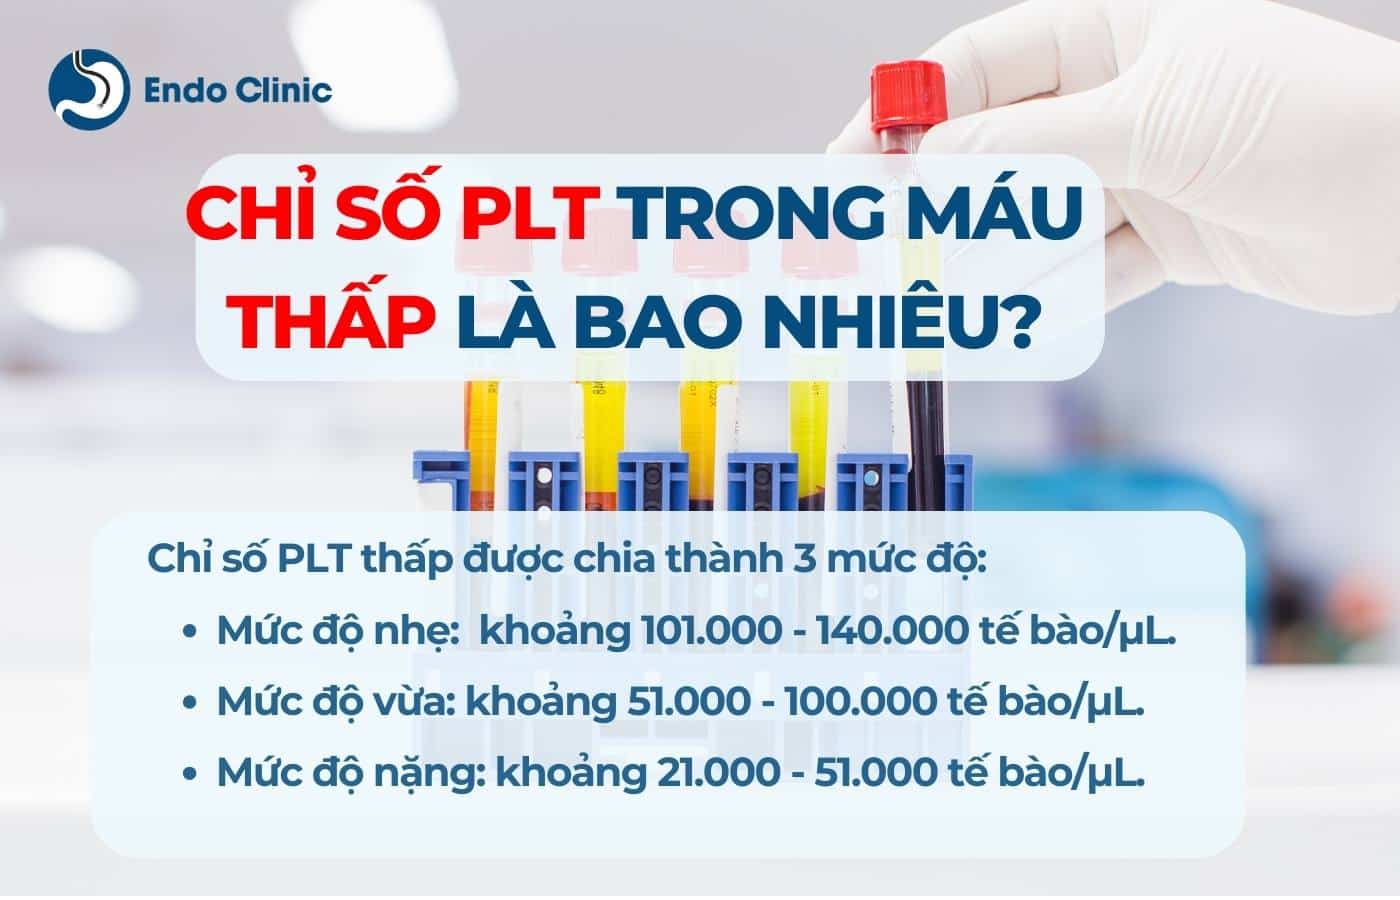 Chỉ số PLT trong máu thấp là bao nhiêu?